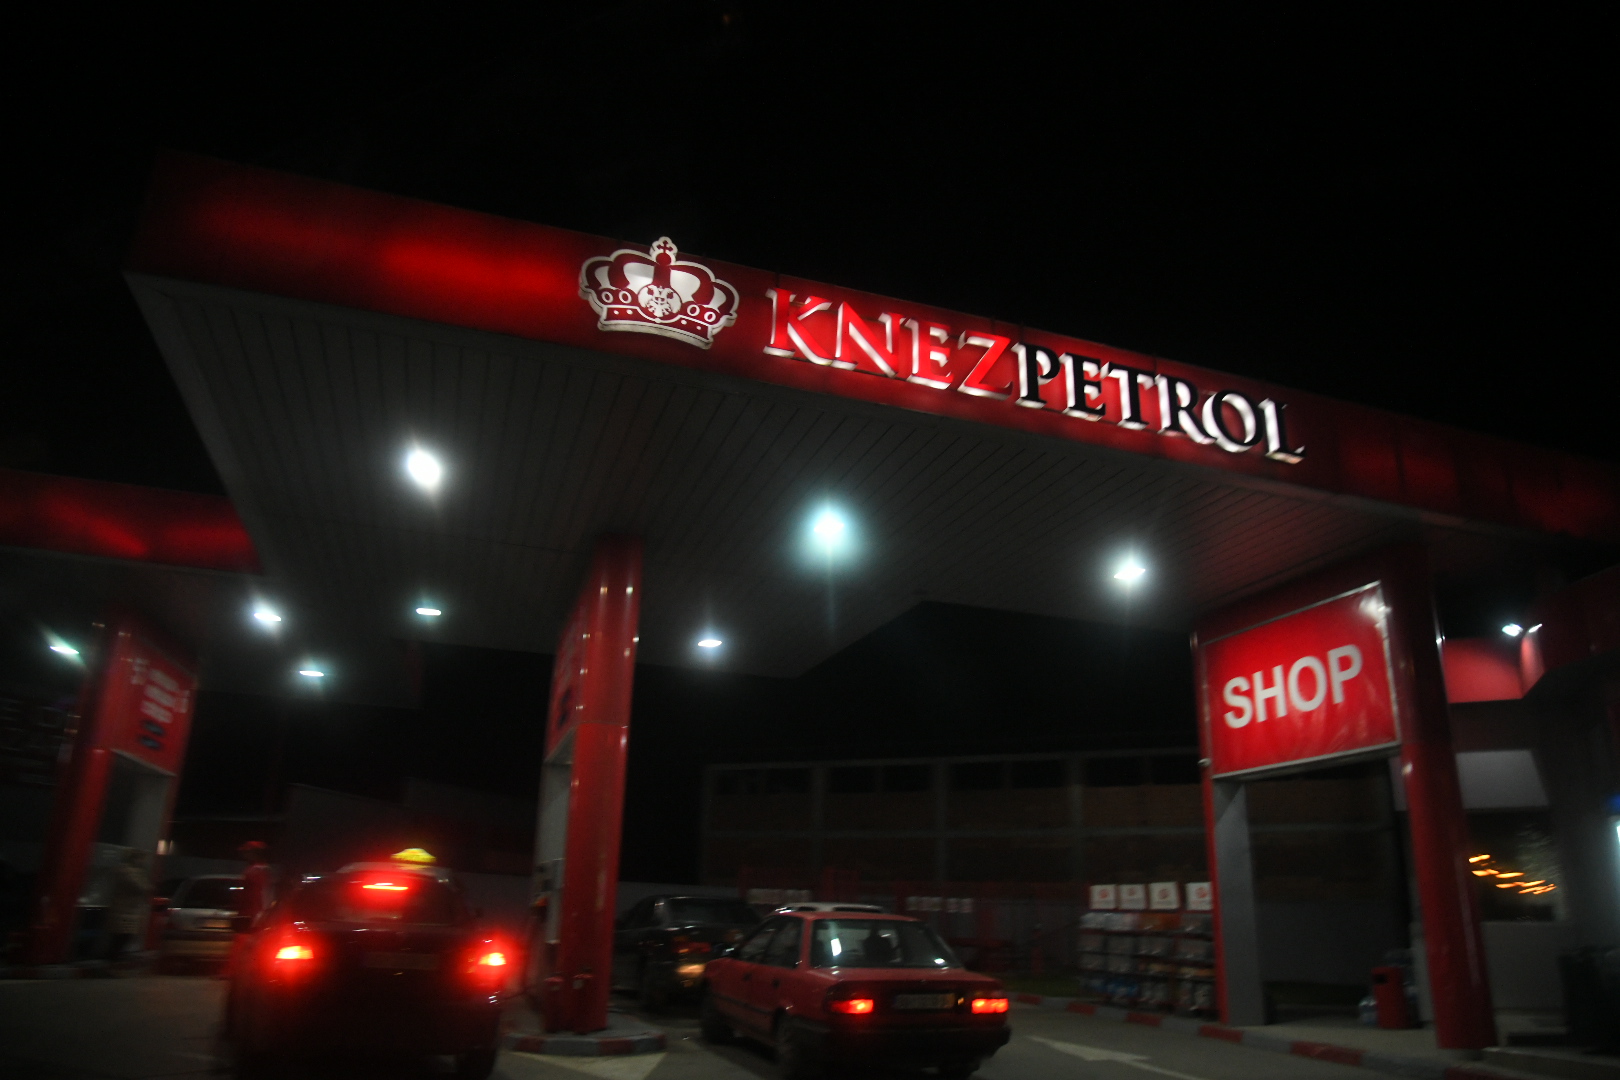 Benzinska pumpa Knez Petrol